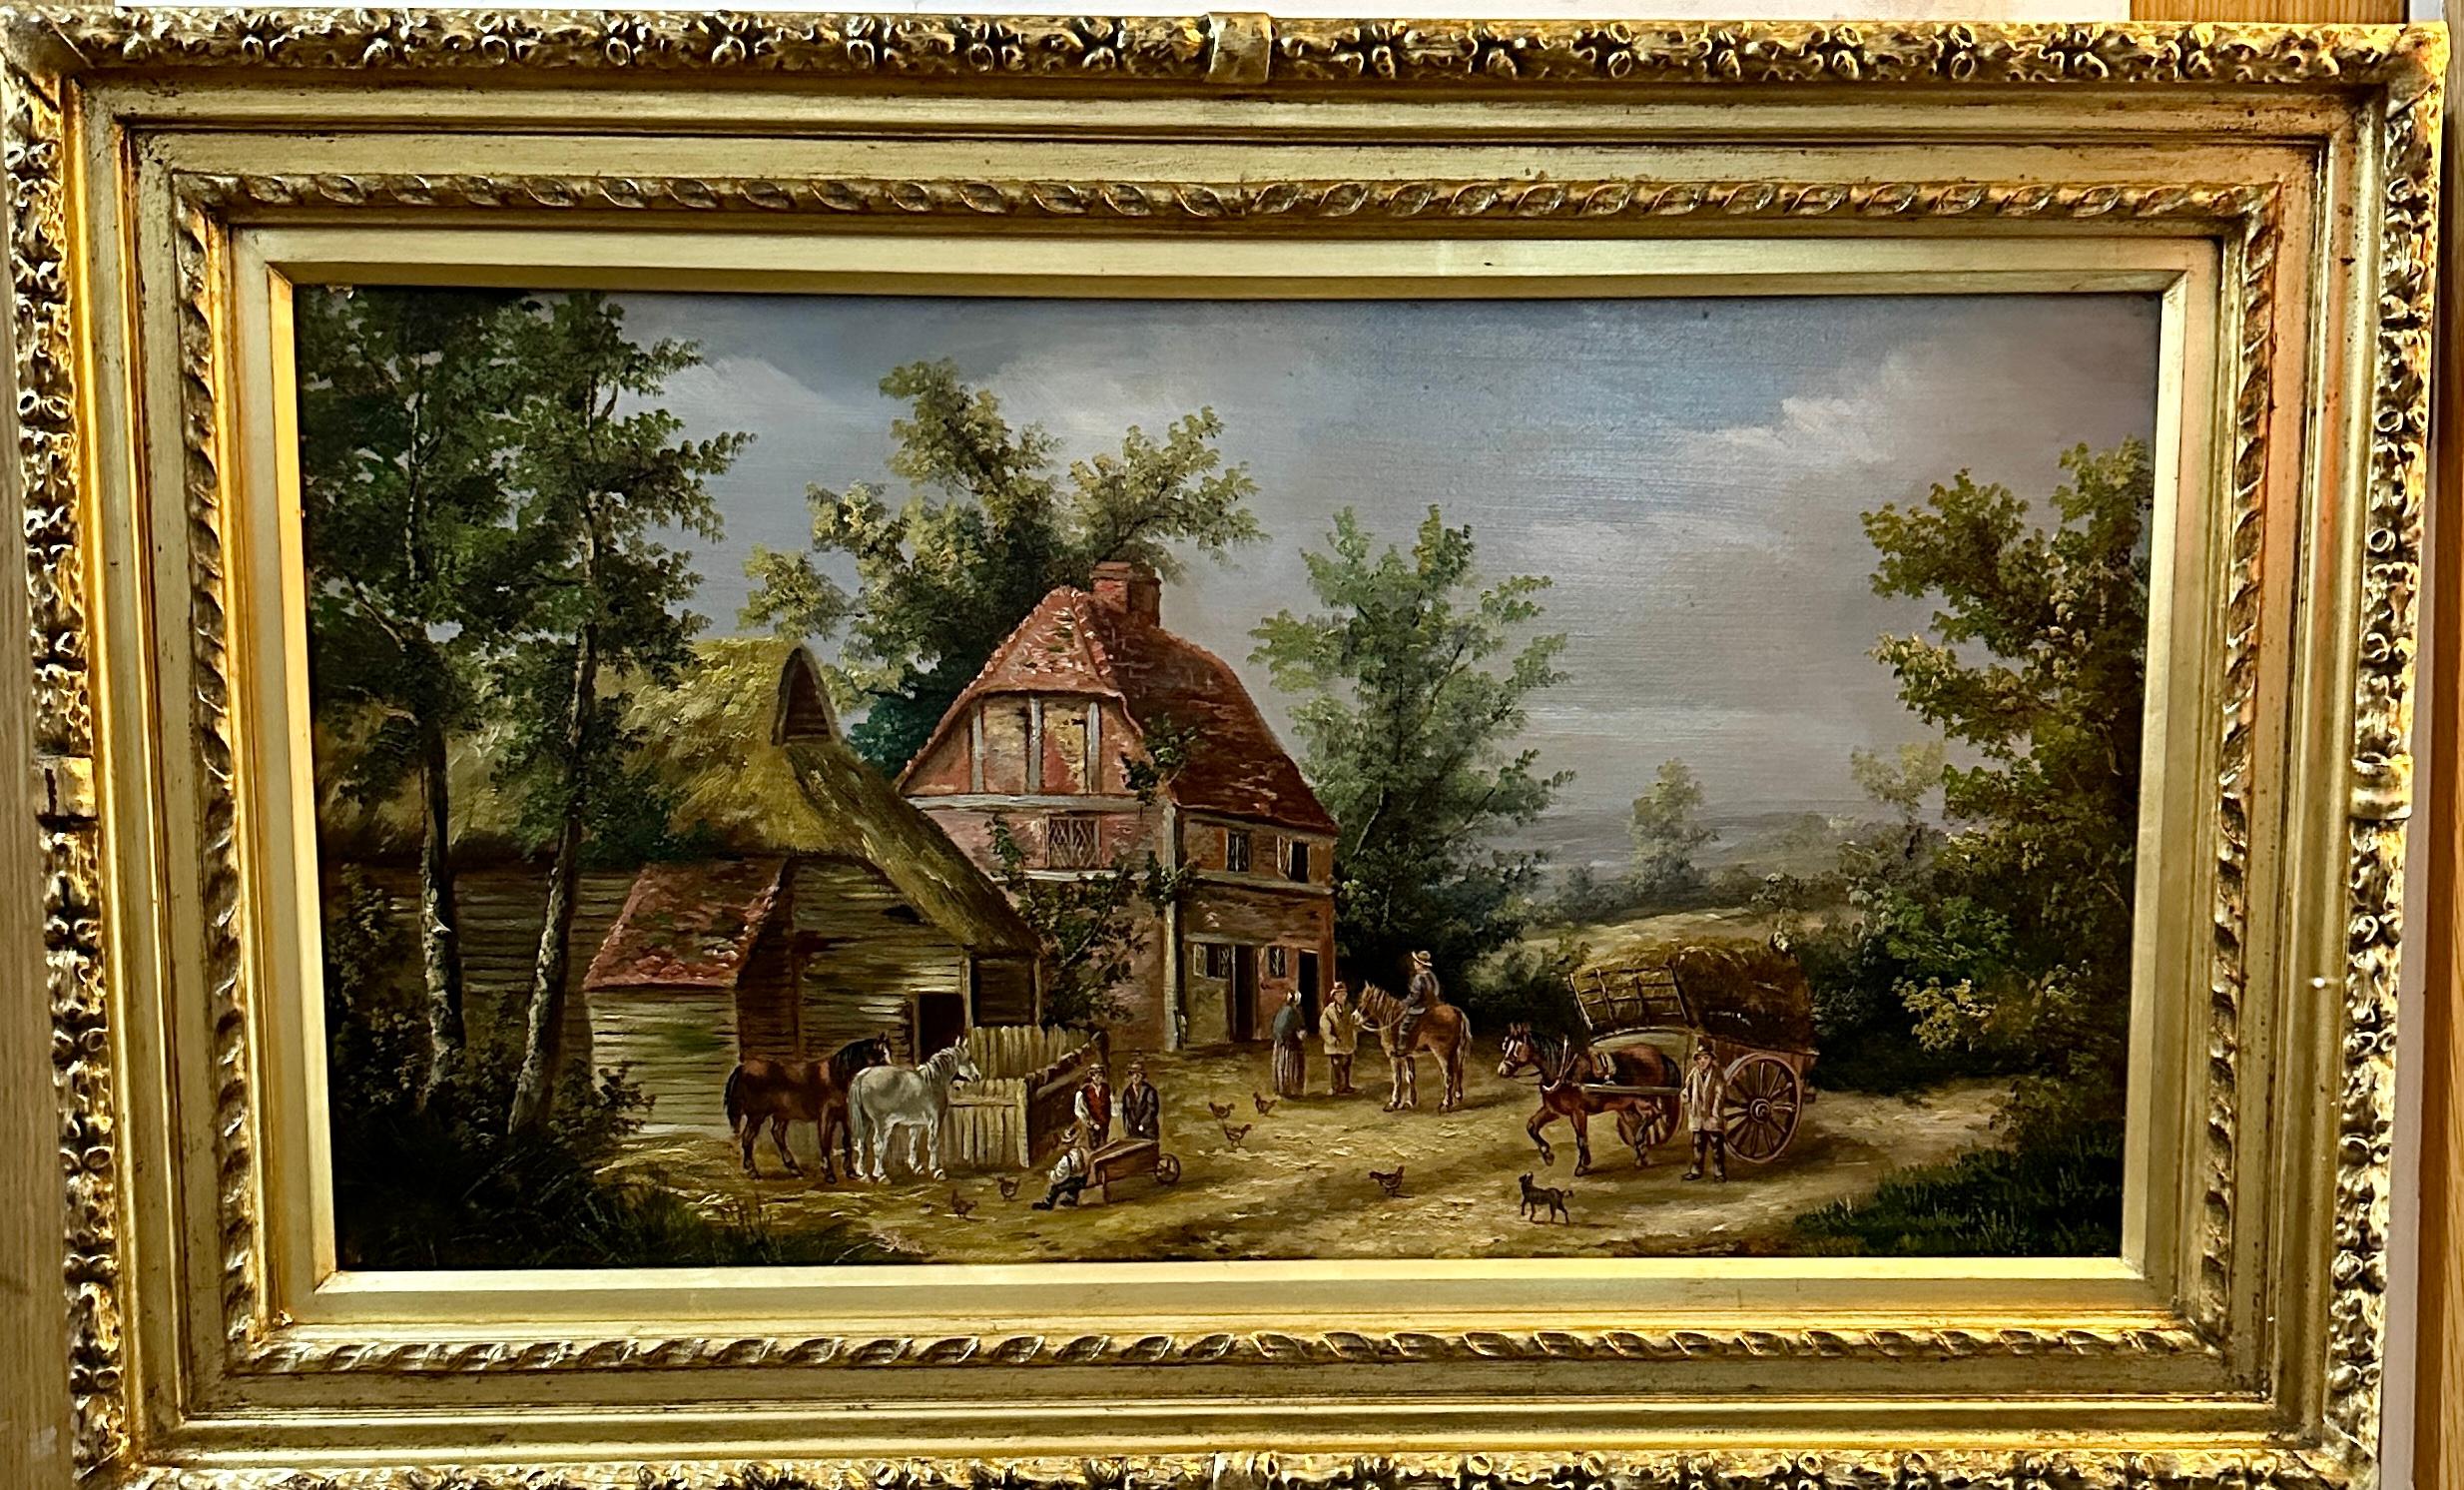 Figurative Painting Georgina Lara - Scène de village anglaise du 19e siècle avec cottages, chevaux et personnes